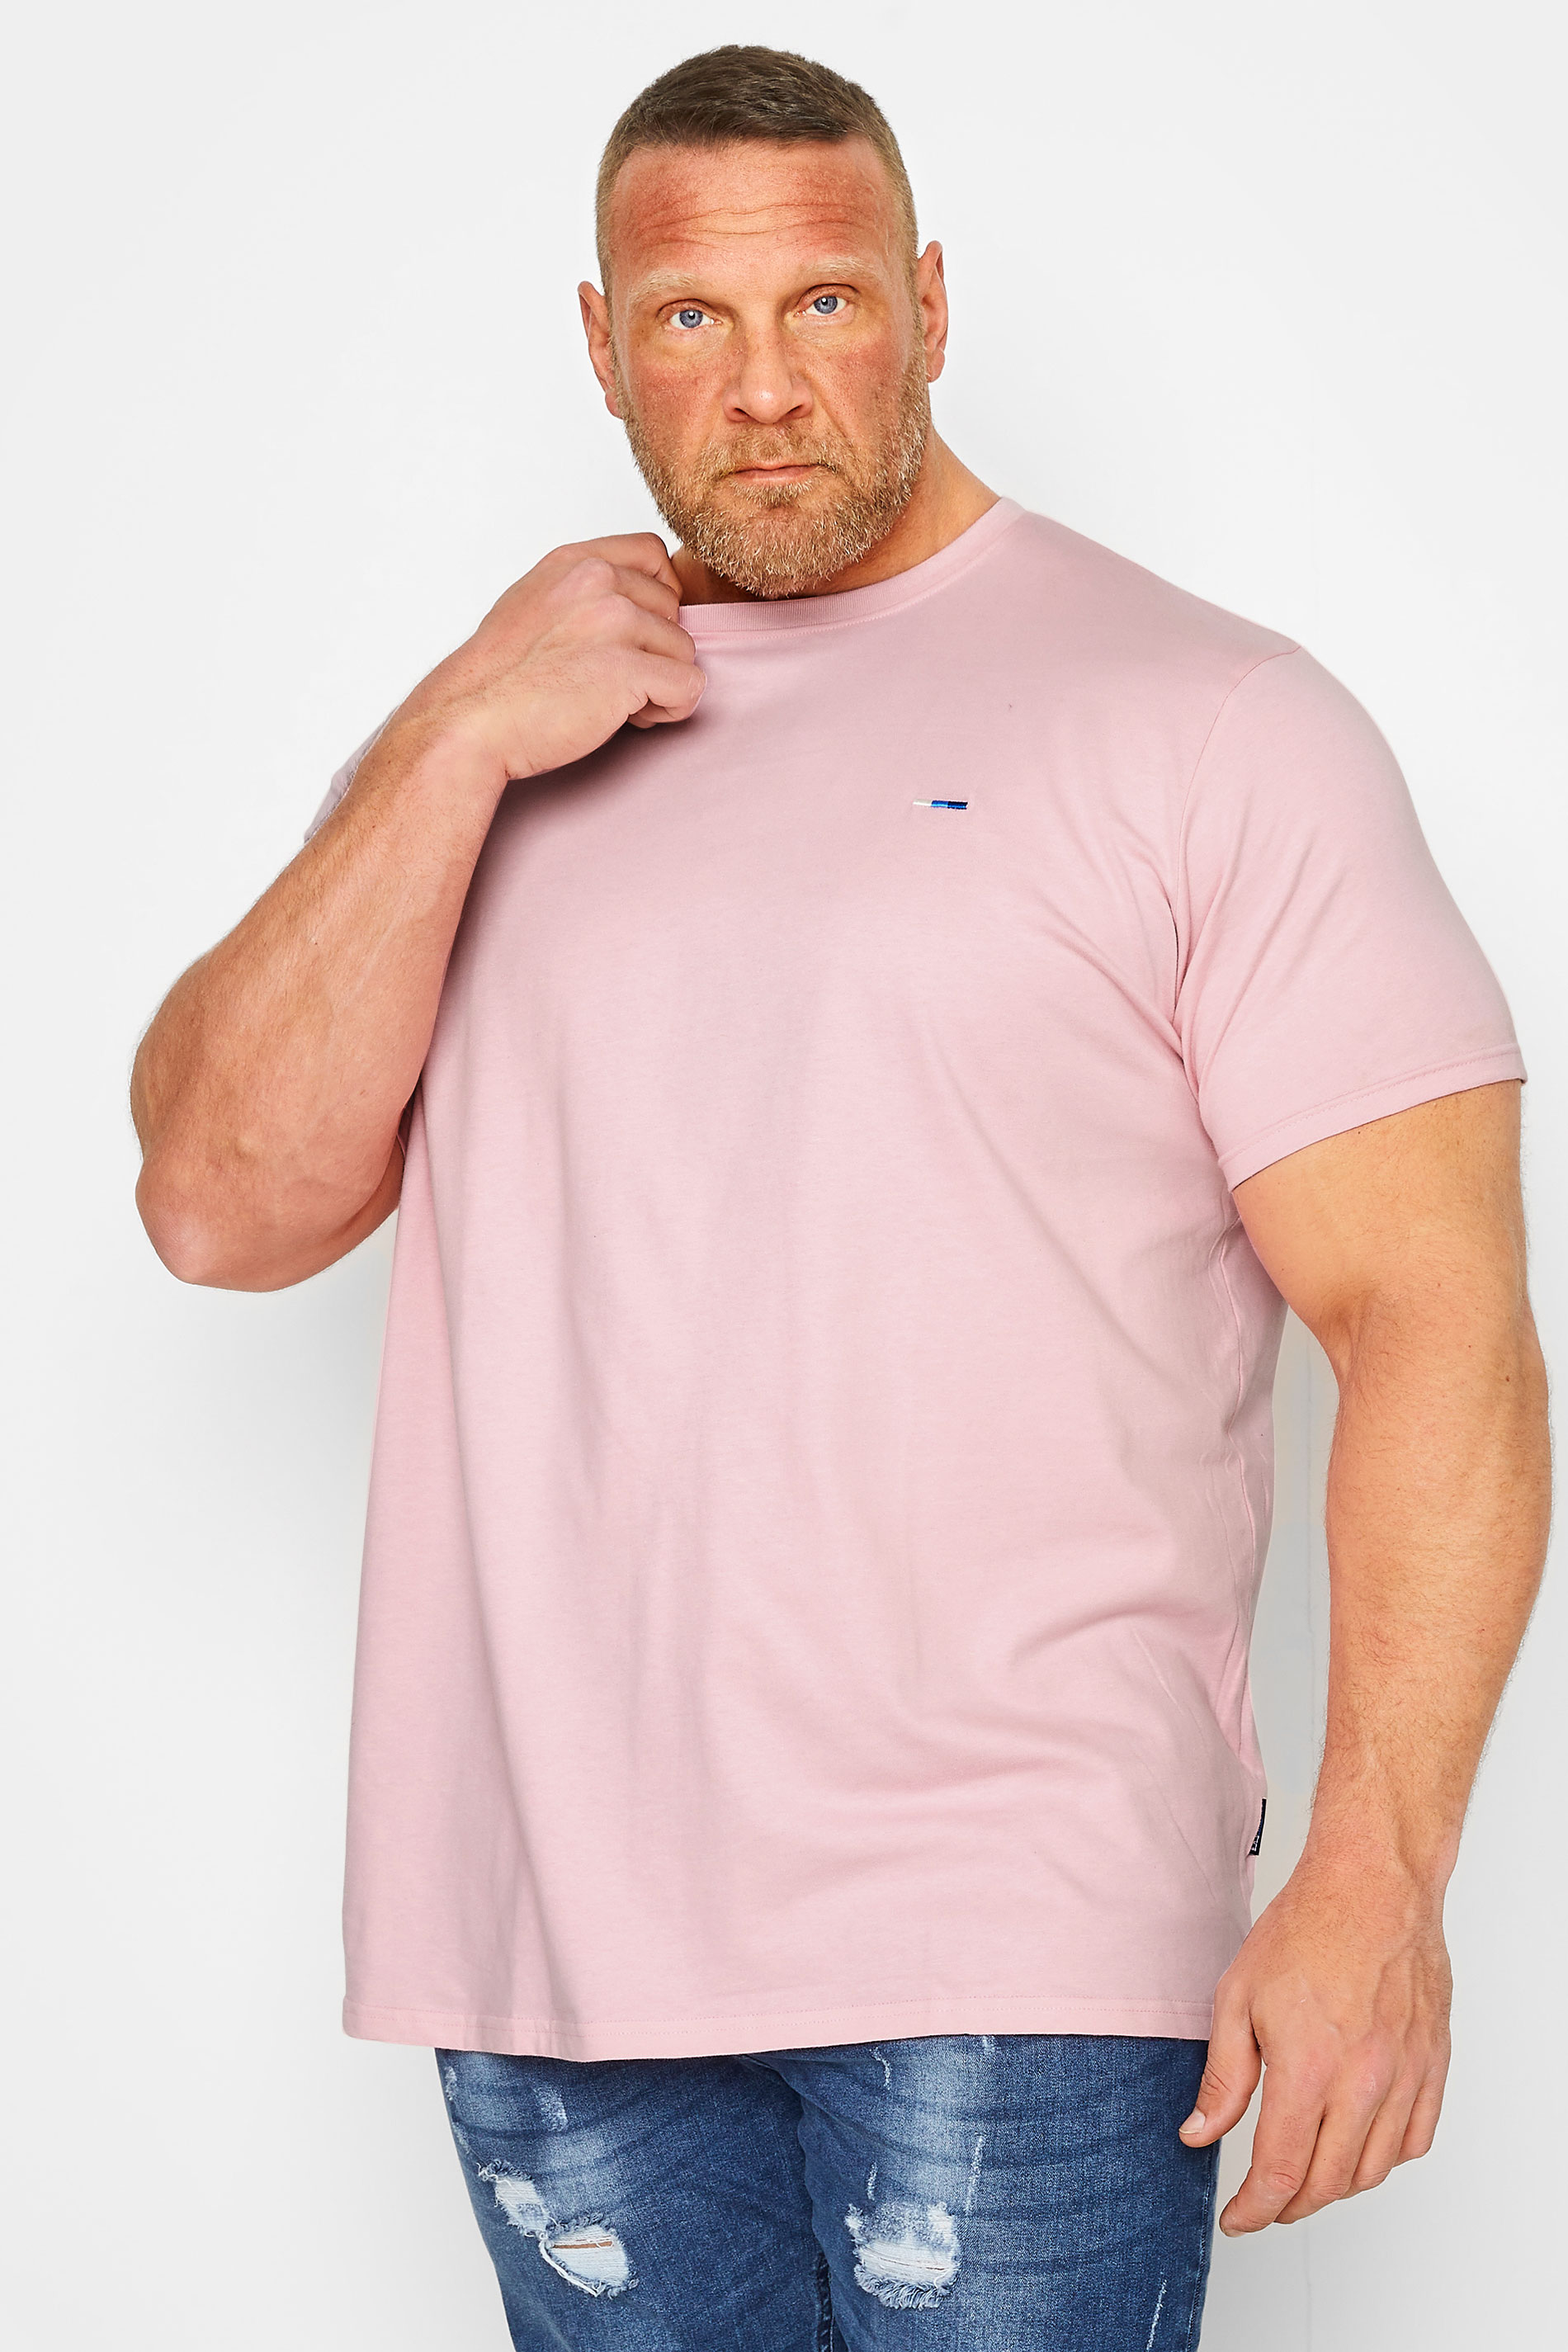 BadRhino Big & Tall Light Pink Core T-Shirt | BadRhino 1